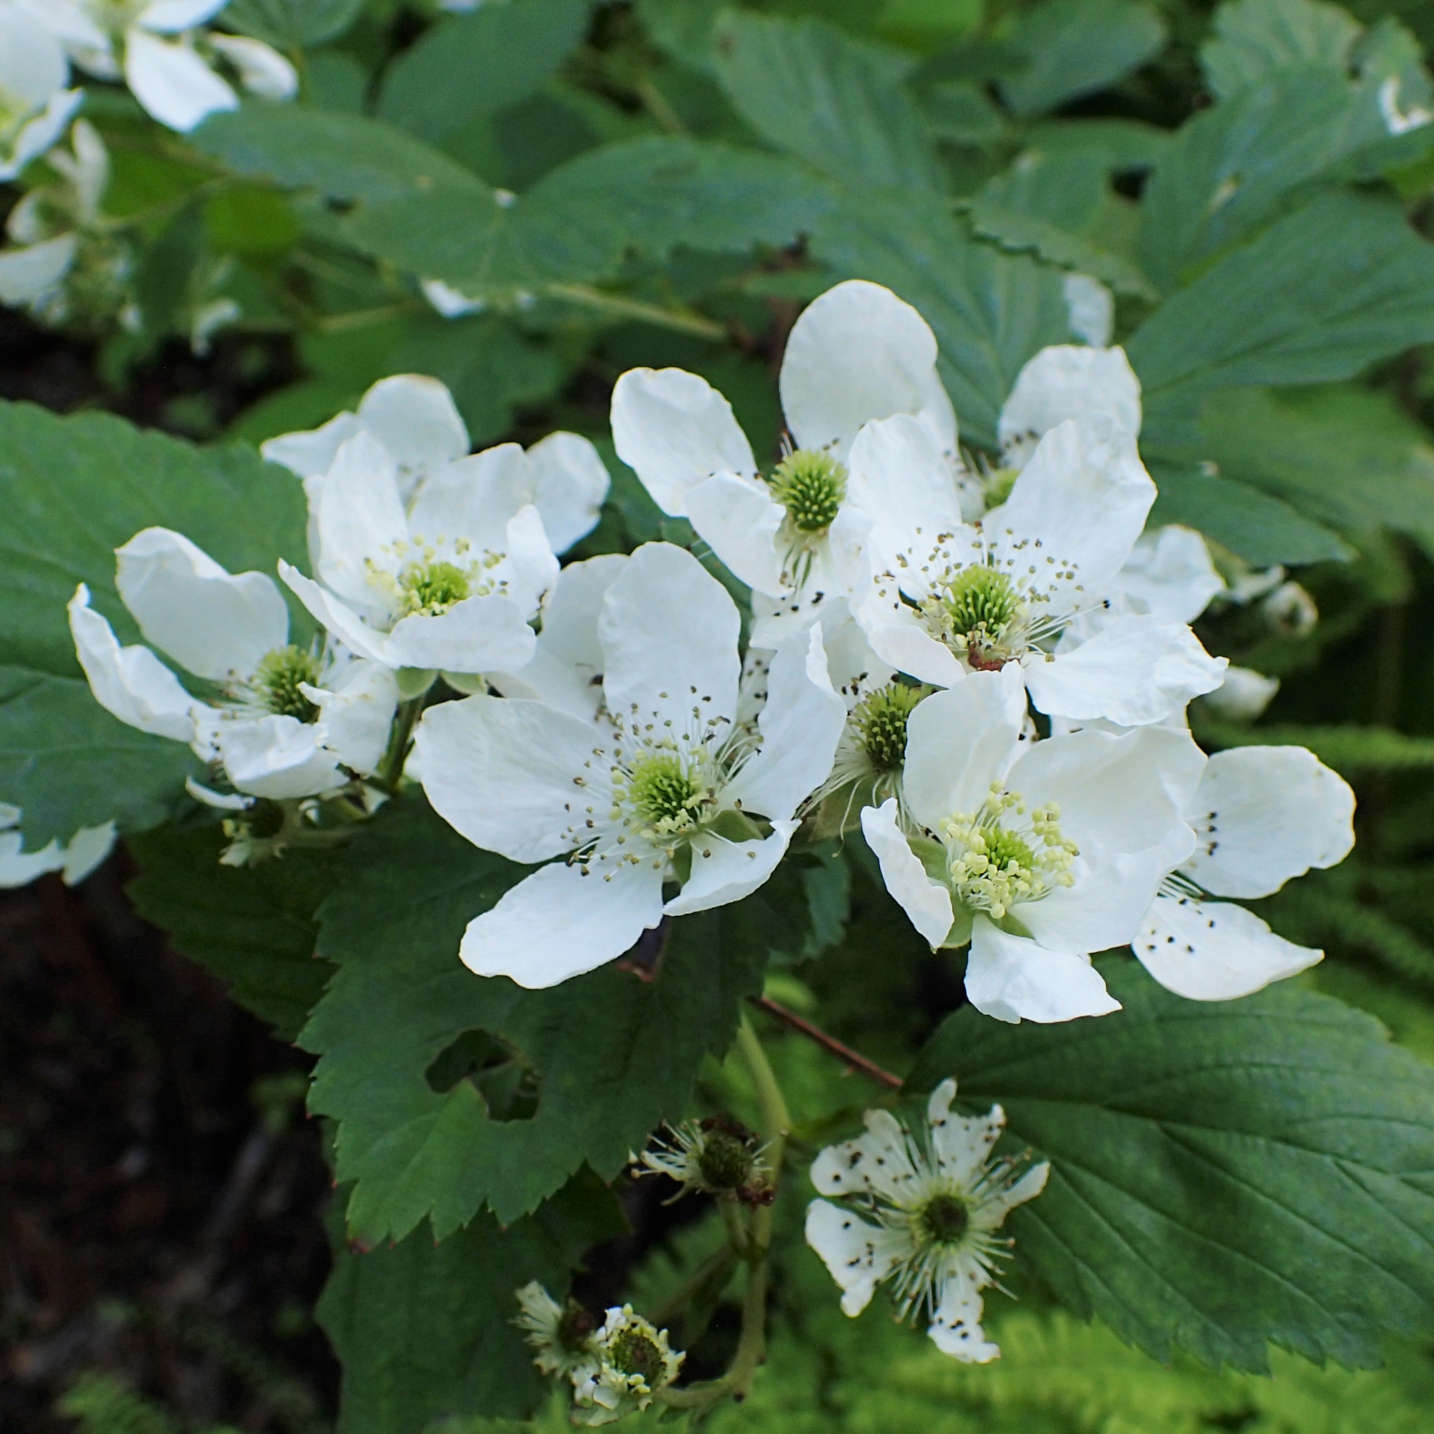 
                  
                    Semences de ronce des alléghanys - Rubus allegheniensis
                  
                